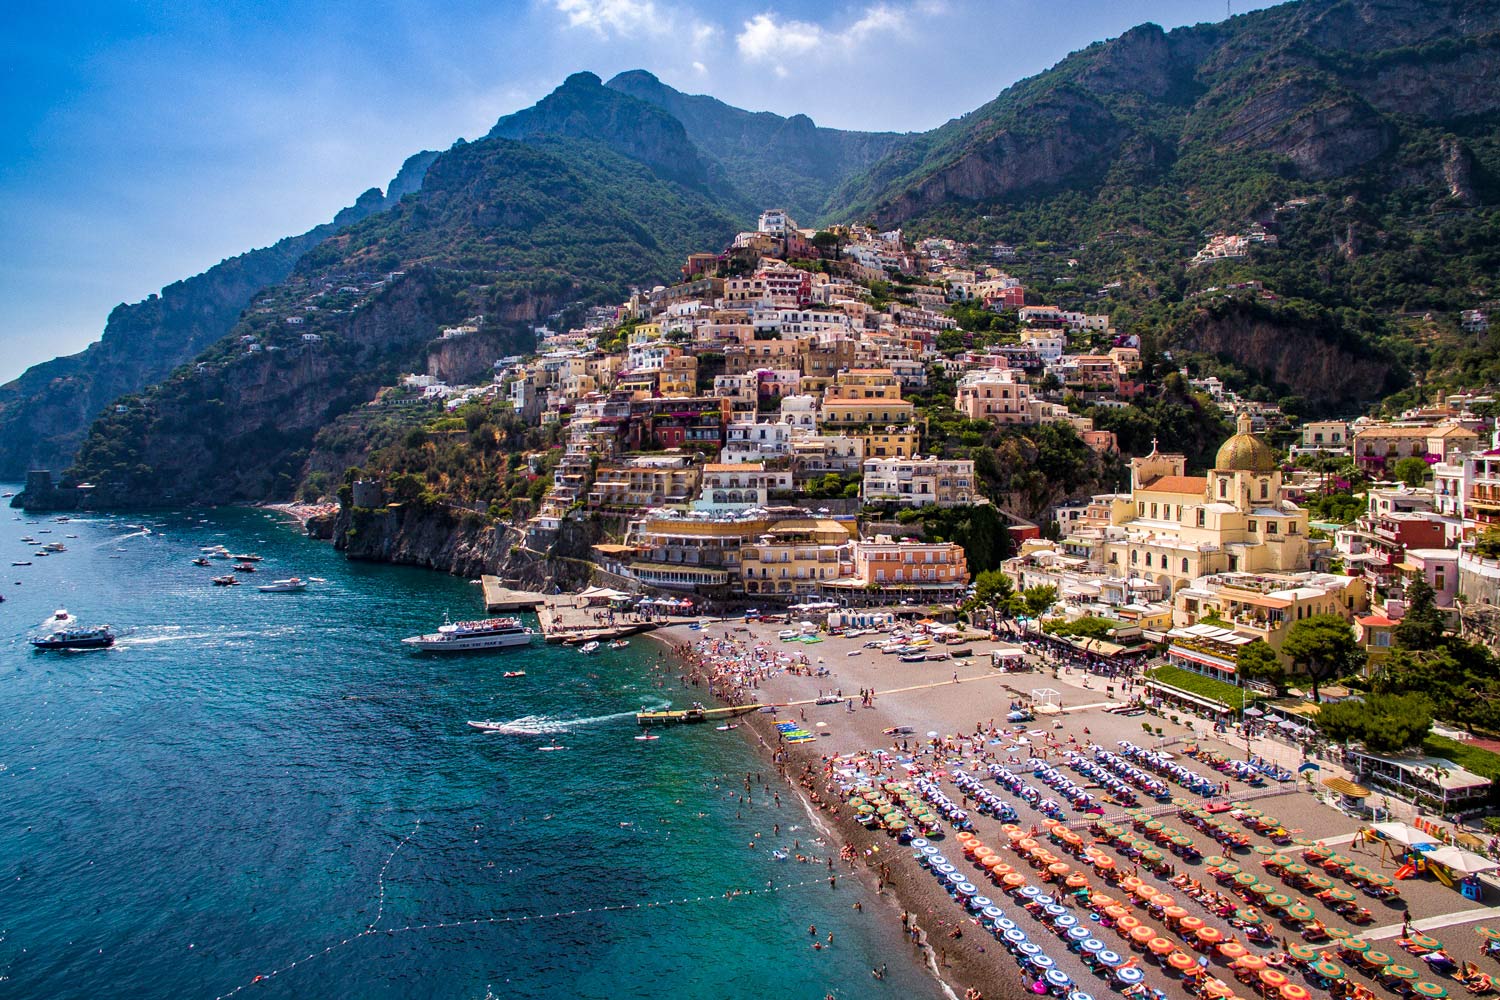 Spiaggia Grande - Simply Amalfi Coast